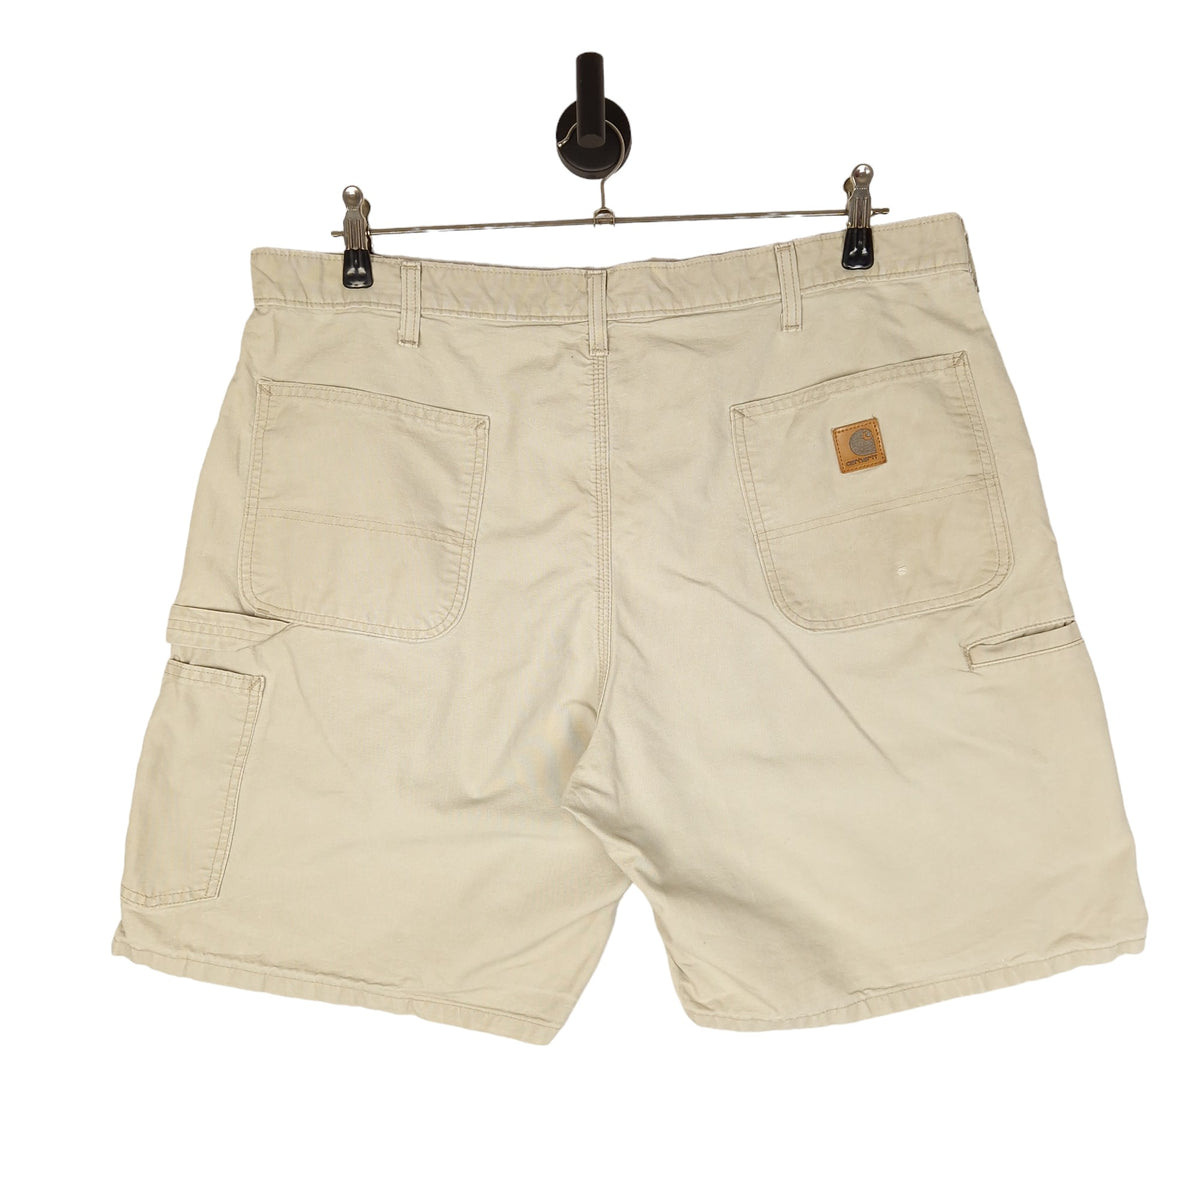 Y2K Carhartt Carpenter Shorts - Size W40